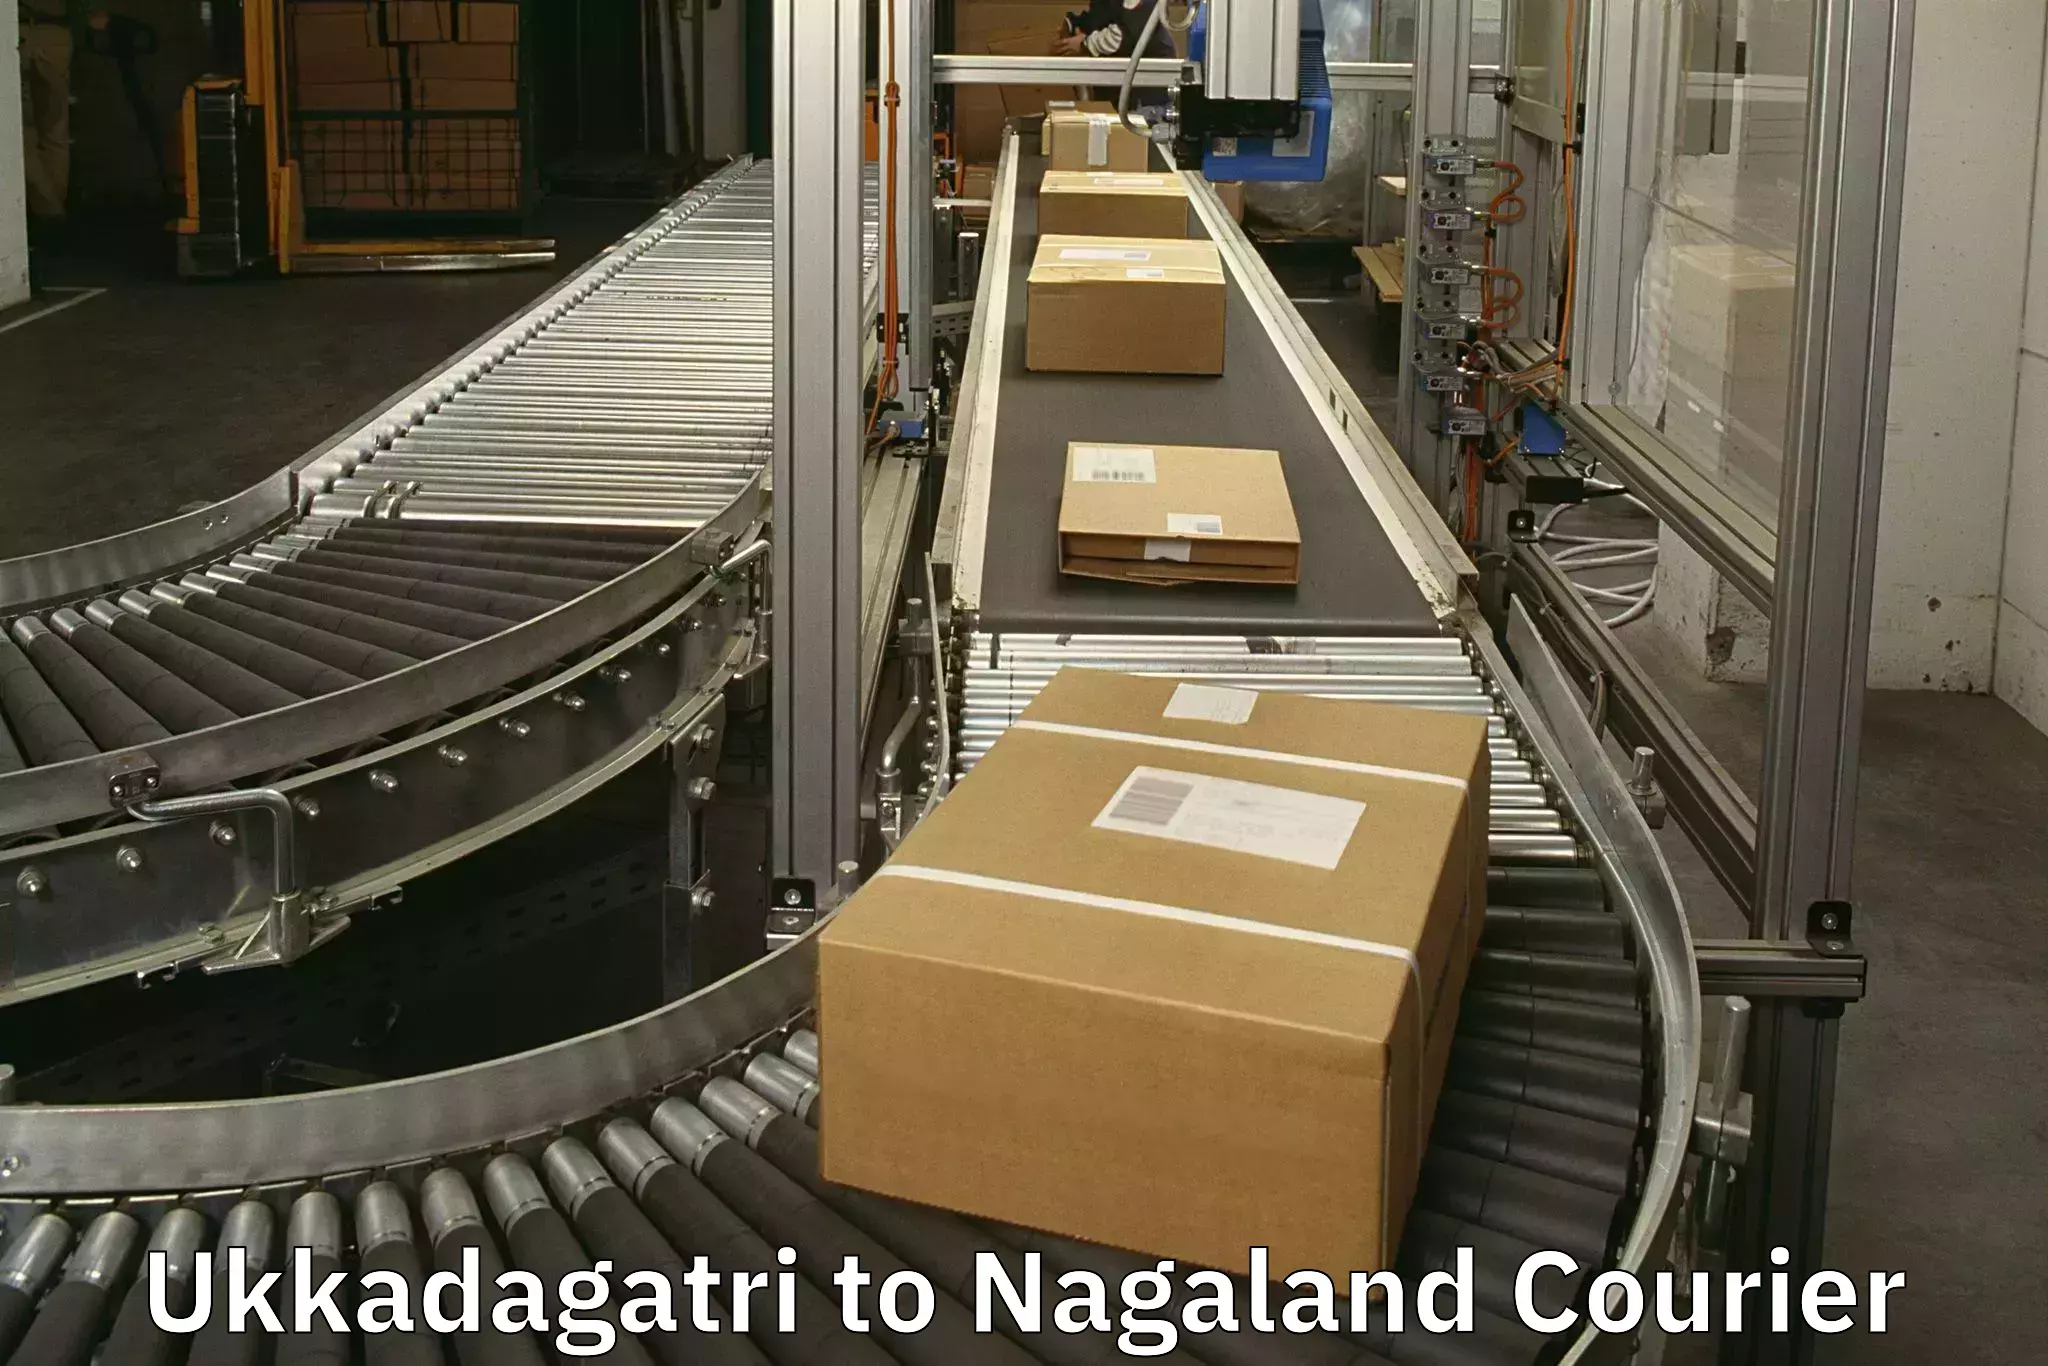 Musical instruments luggage transport Ukkadagatri to Nagaland